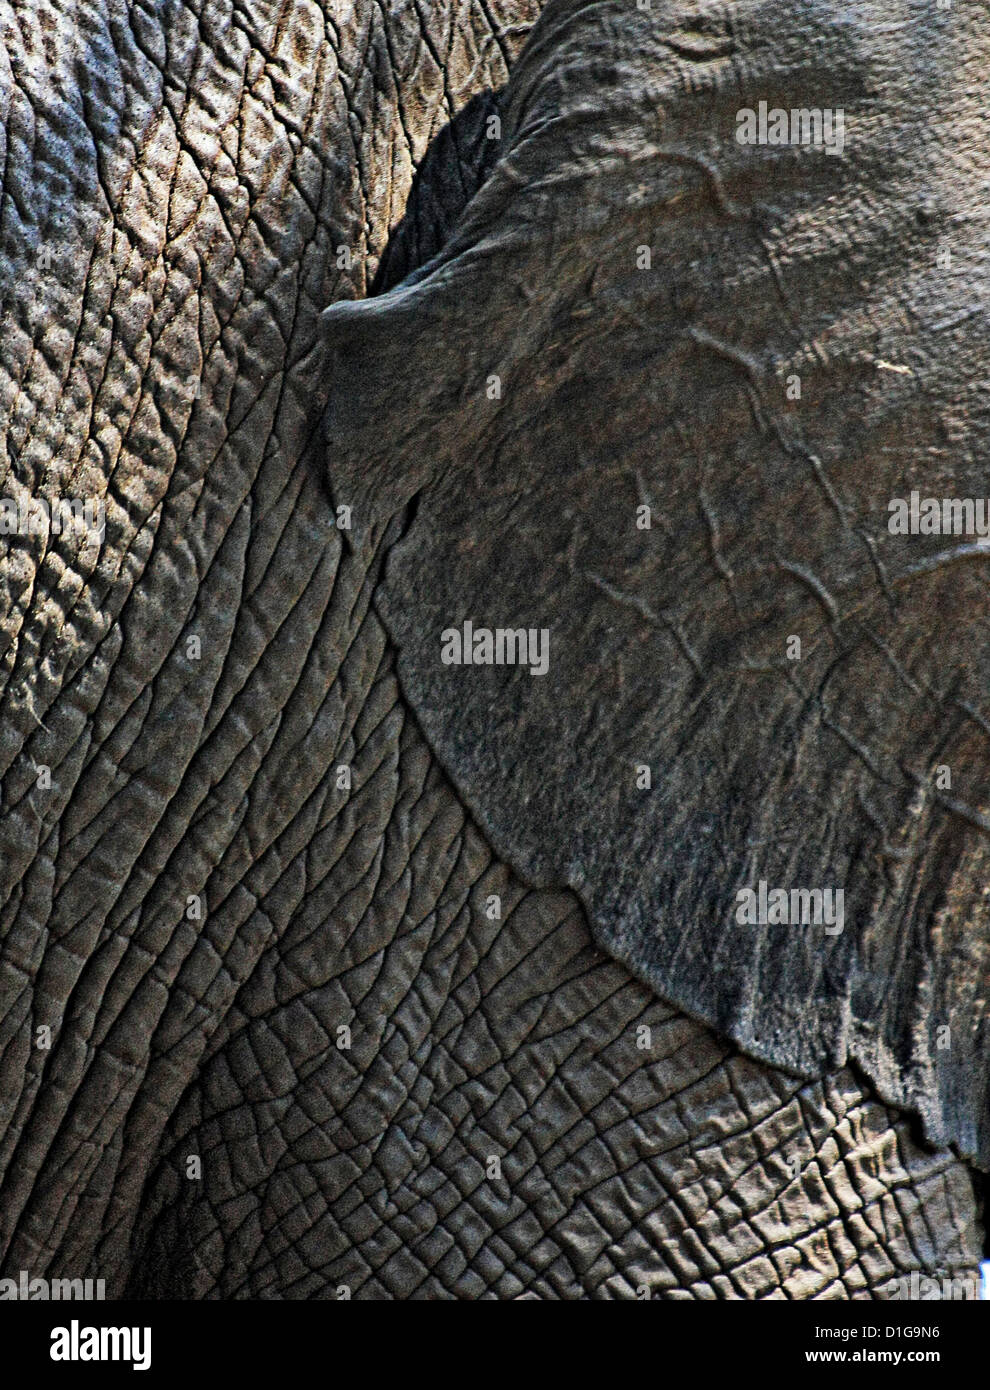 Close-up de un elefante los oídos y la piel arrugada Foto de stock